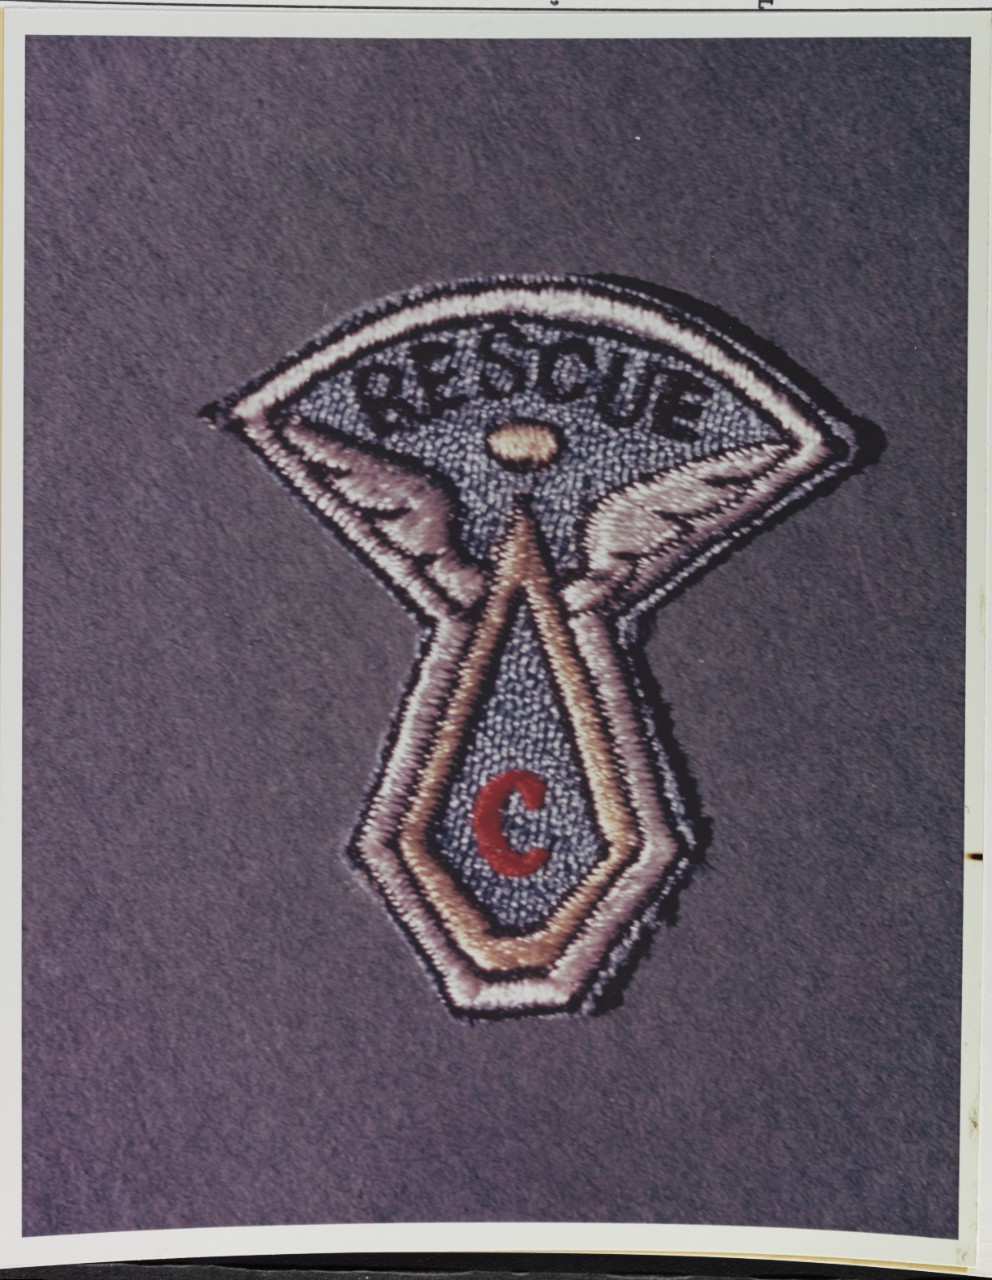 Combat Rescue Badge, unofficial